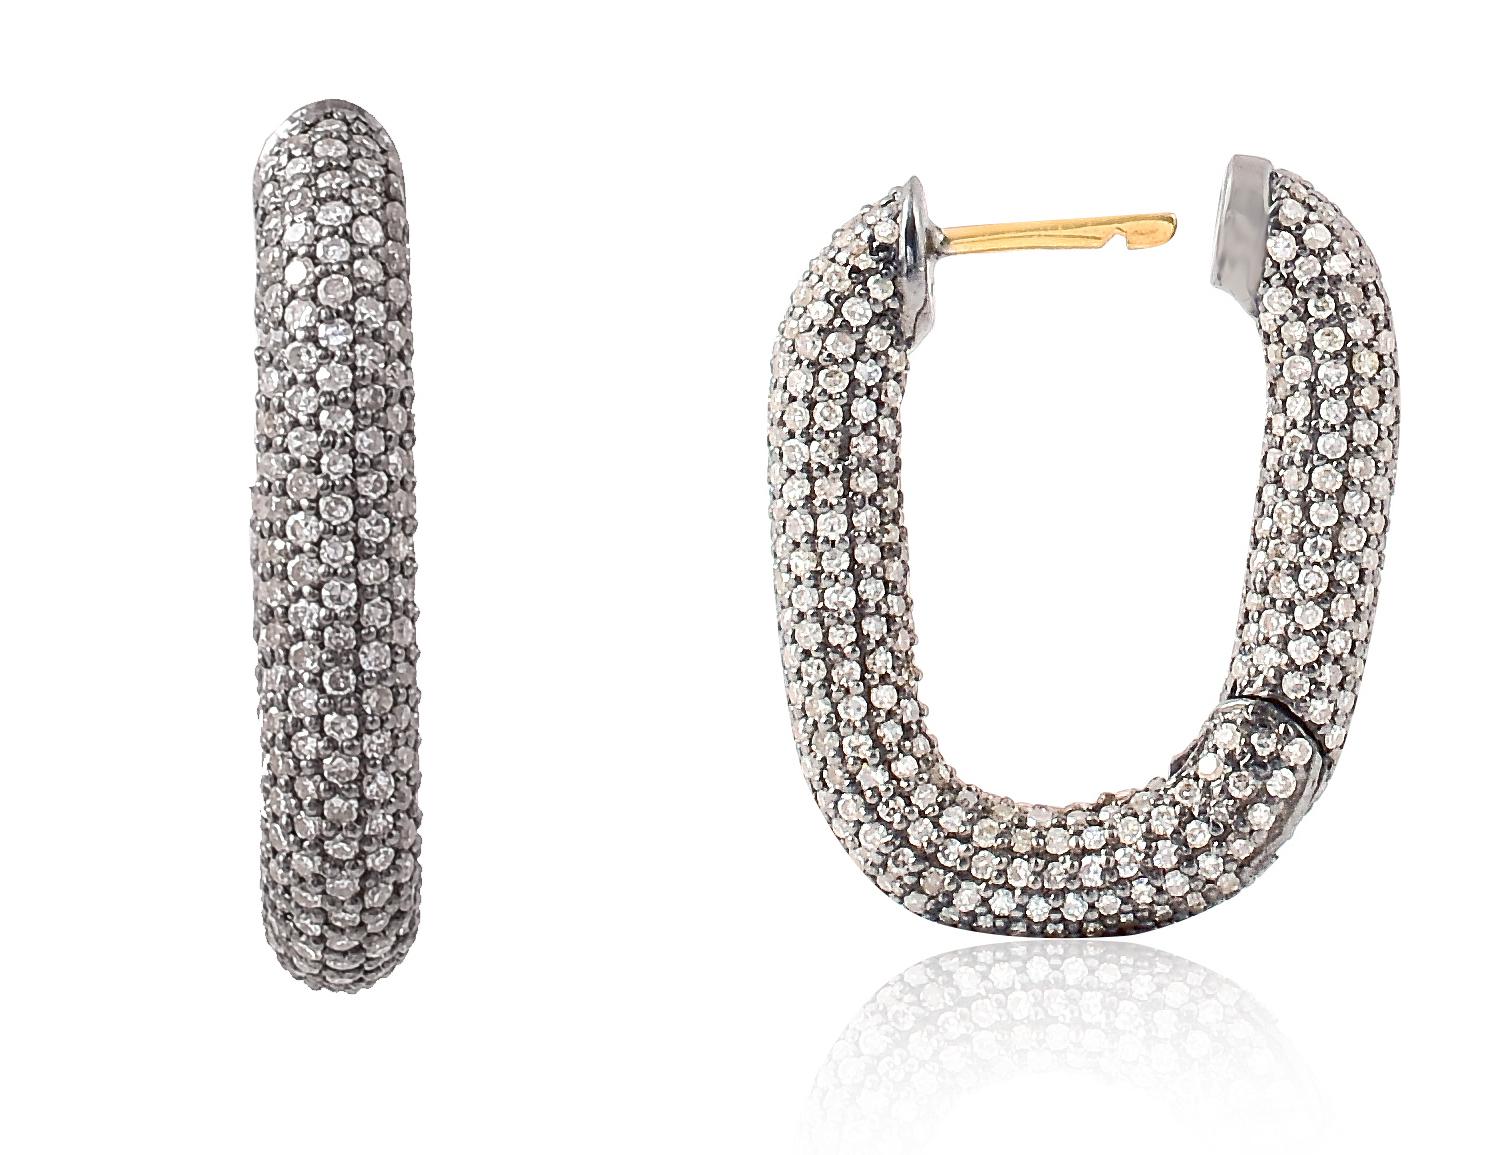 2,43 Karat Diamant-Ohrringe im viktorianischen Stil Huggies

Dieser Diamant-Reifenohrring im viktorianischen Art-Deco-Stil ist außergewöhnlich. Die wunderschönen, mit Pflastersteinen besetzten Diamanten formen die elegante U-Form des